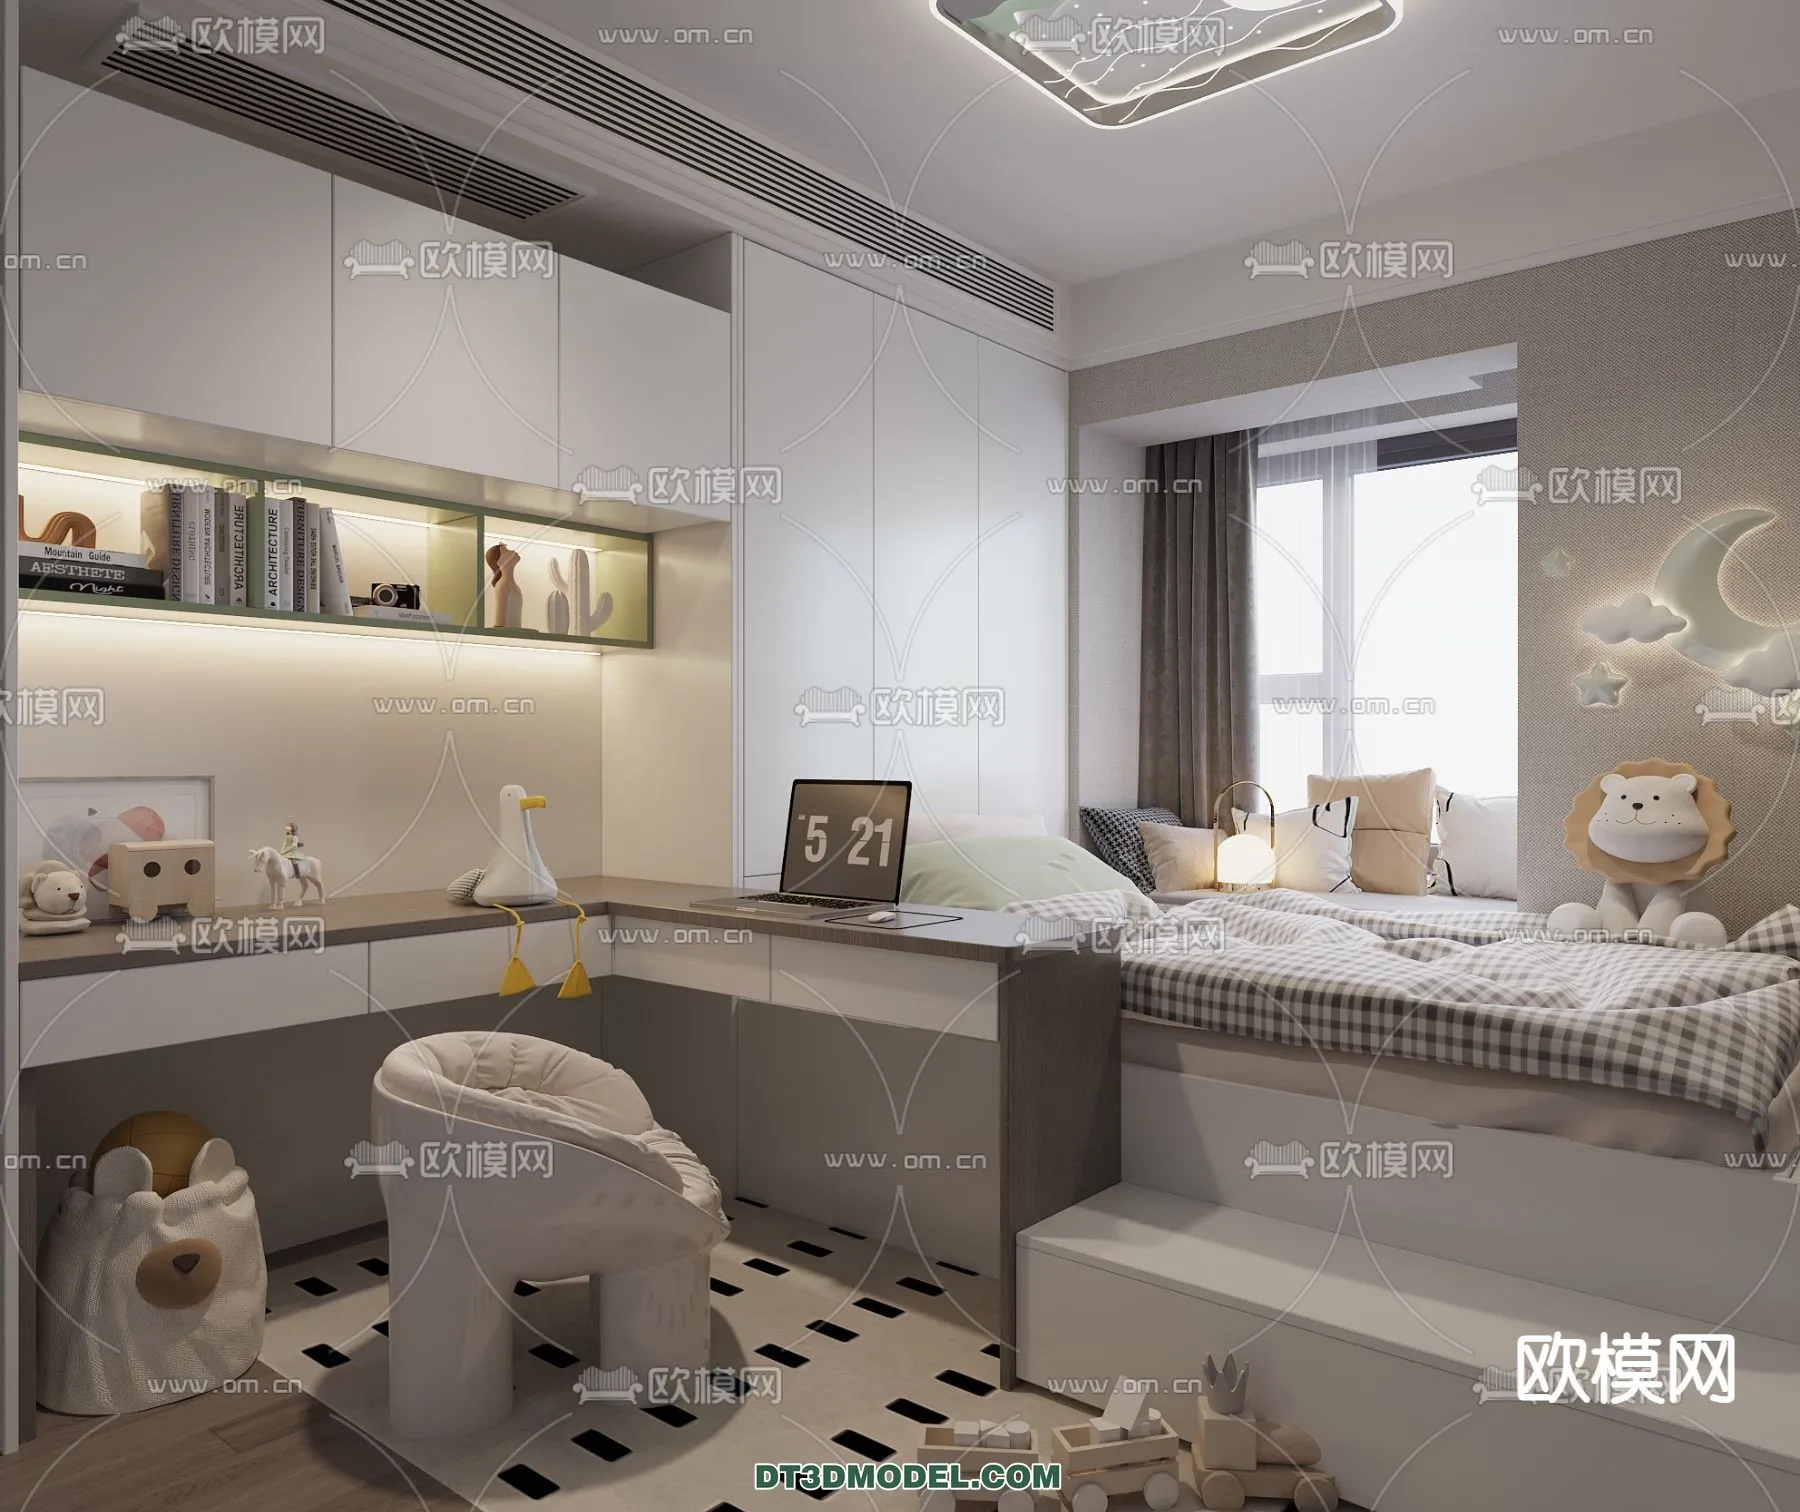 Tatami Bedroom – Japan Bedroom – 3D Scene – 031